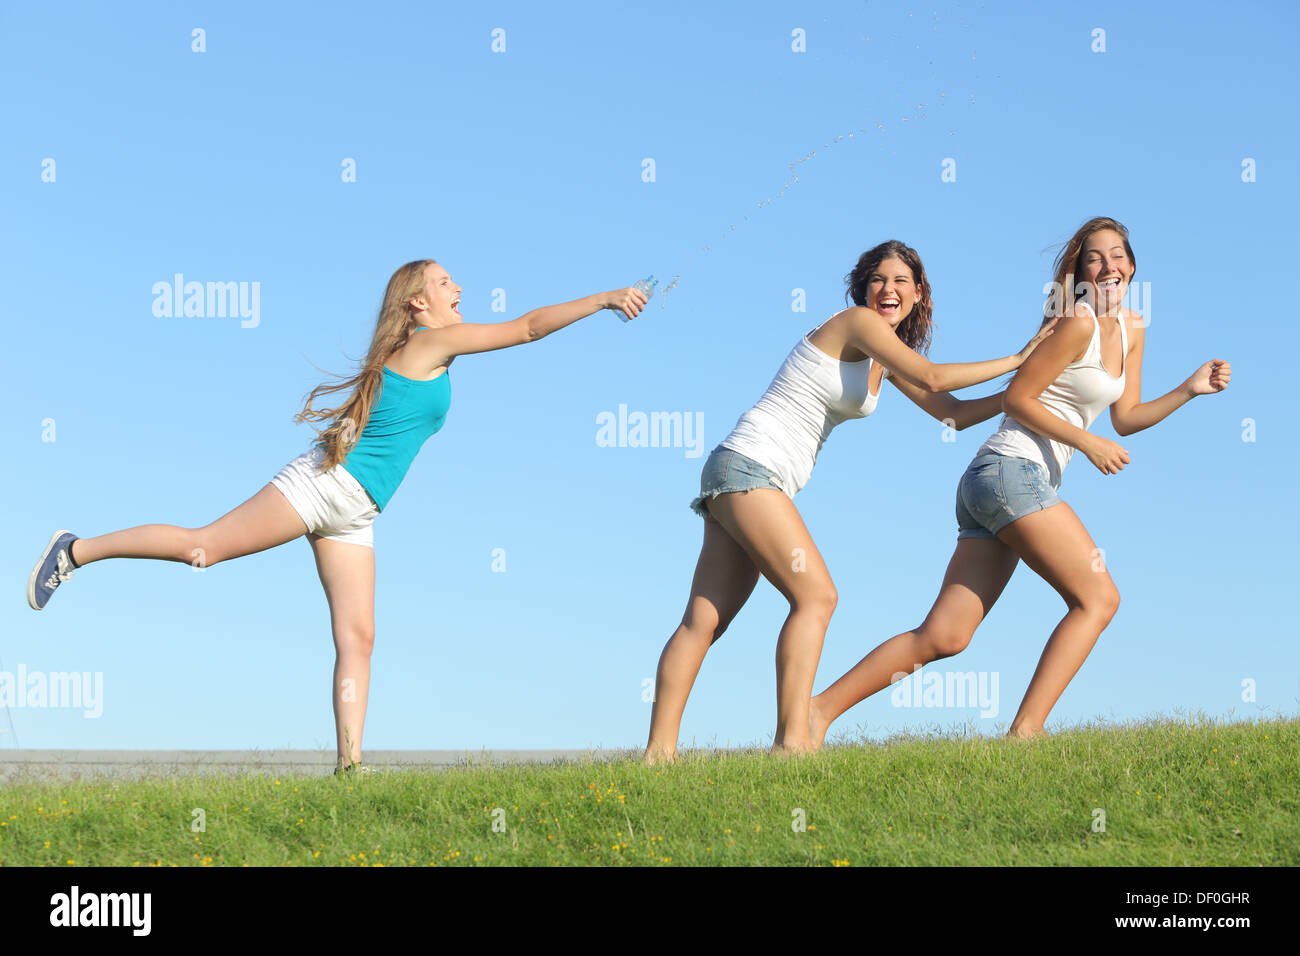 Gruppe von Teenager-Mädchen spielen glücklich werfen Wasser auf dem Rasen mit dem Himmel im Hintergrund Stockfoto